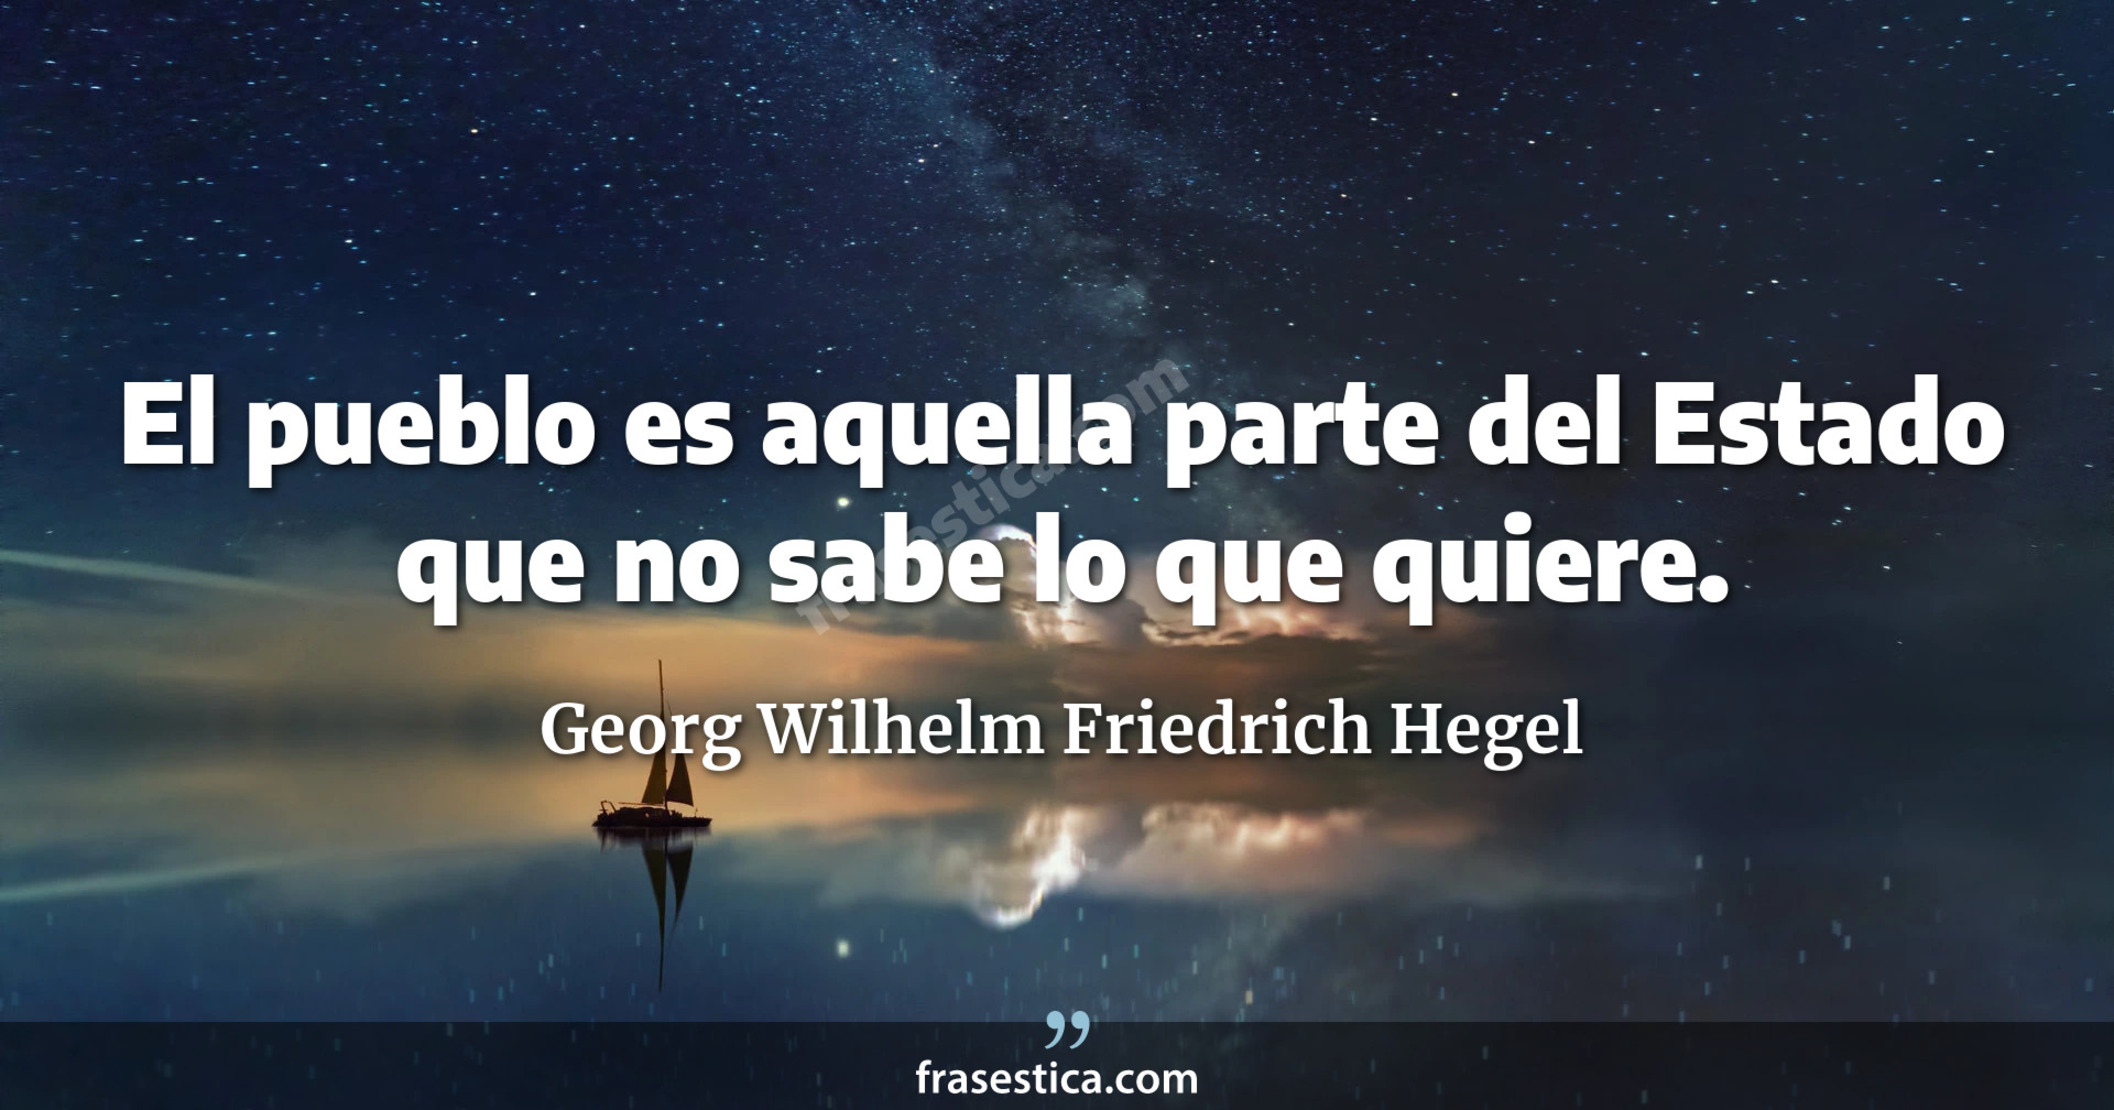 El pueblo es aquella parte del Estado que no sabe lo que quiere. - Georg Wilhelm Friedrich Hegel